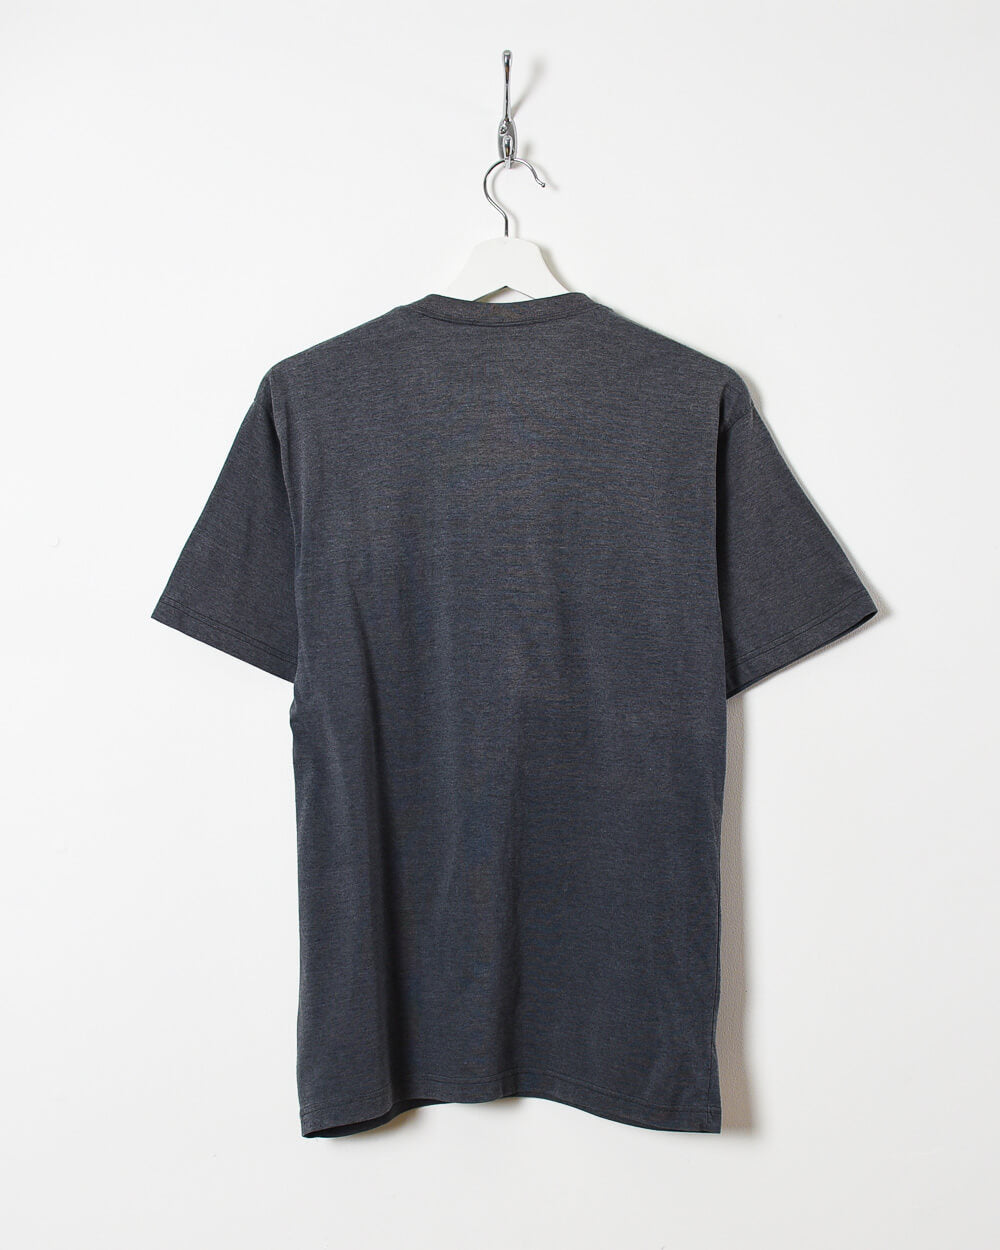 Grey Adidas T-Shirt - Small